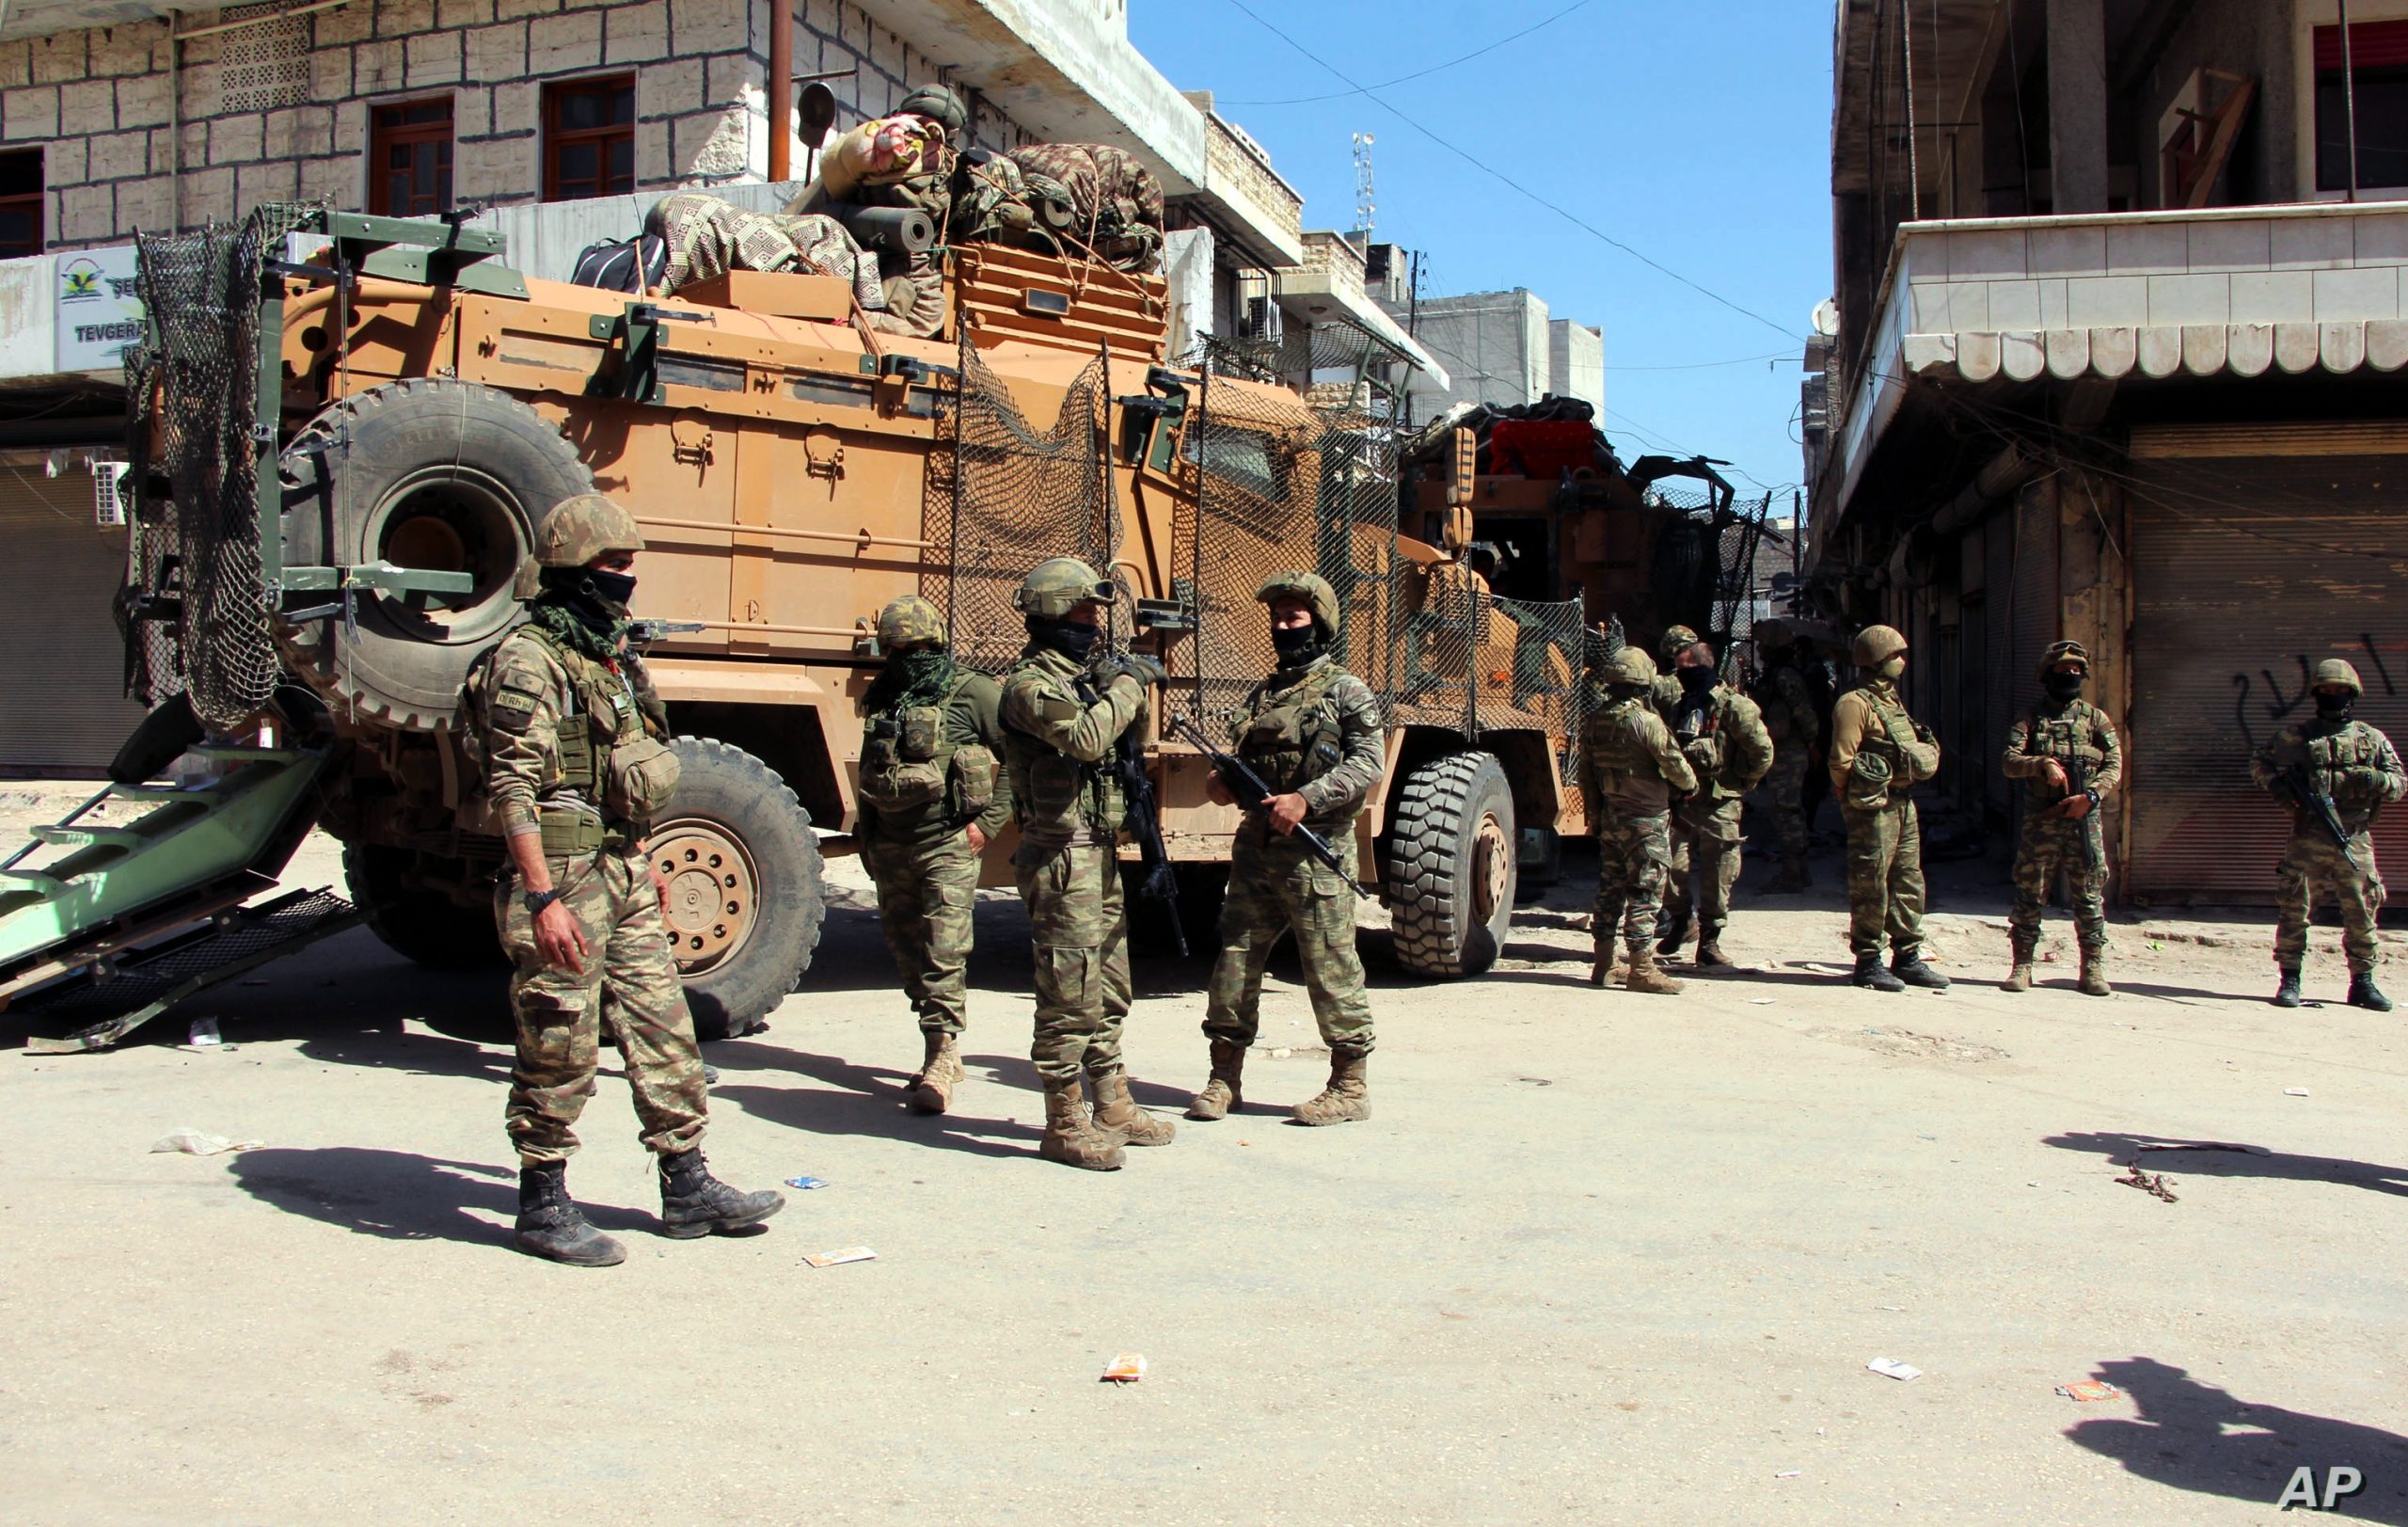 Ο τουρκικός Στρατός μπήκε στη στρατηγική πόλη Ρας Αλ Αϊν – Έτοιμος να εισέλθει και στο Ταλ Αμπιγιάντ (φώτο)